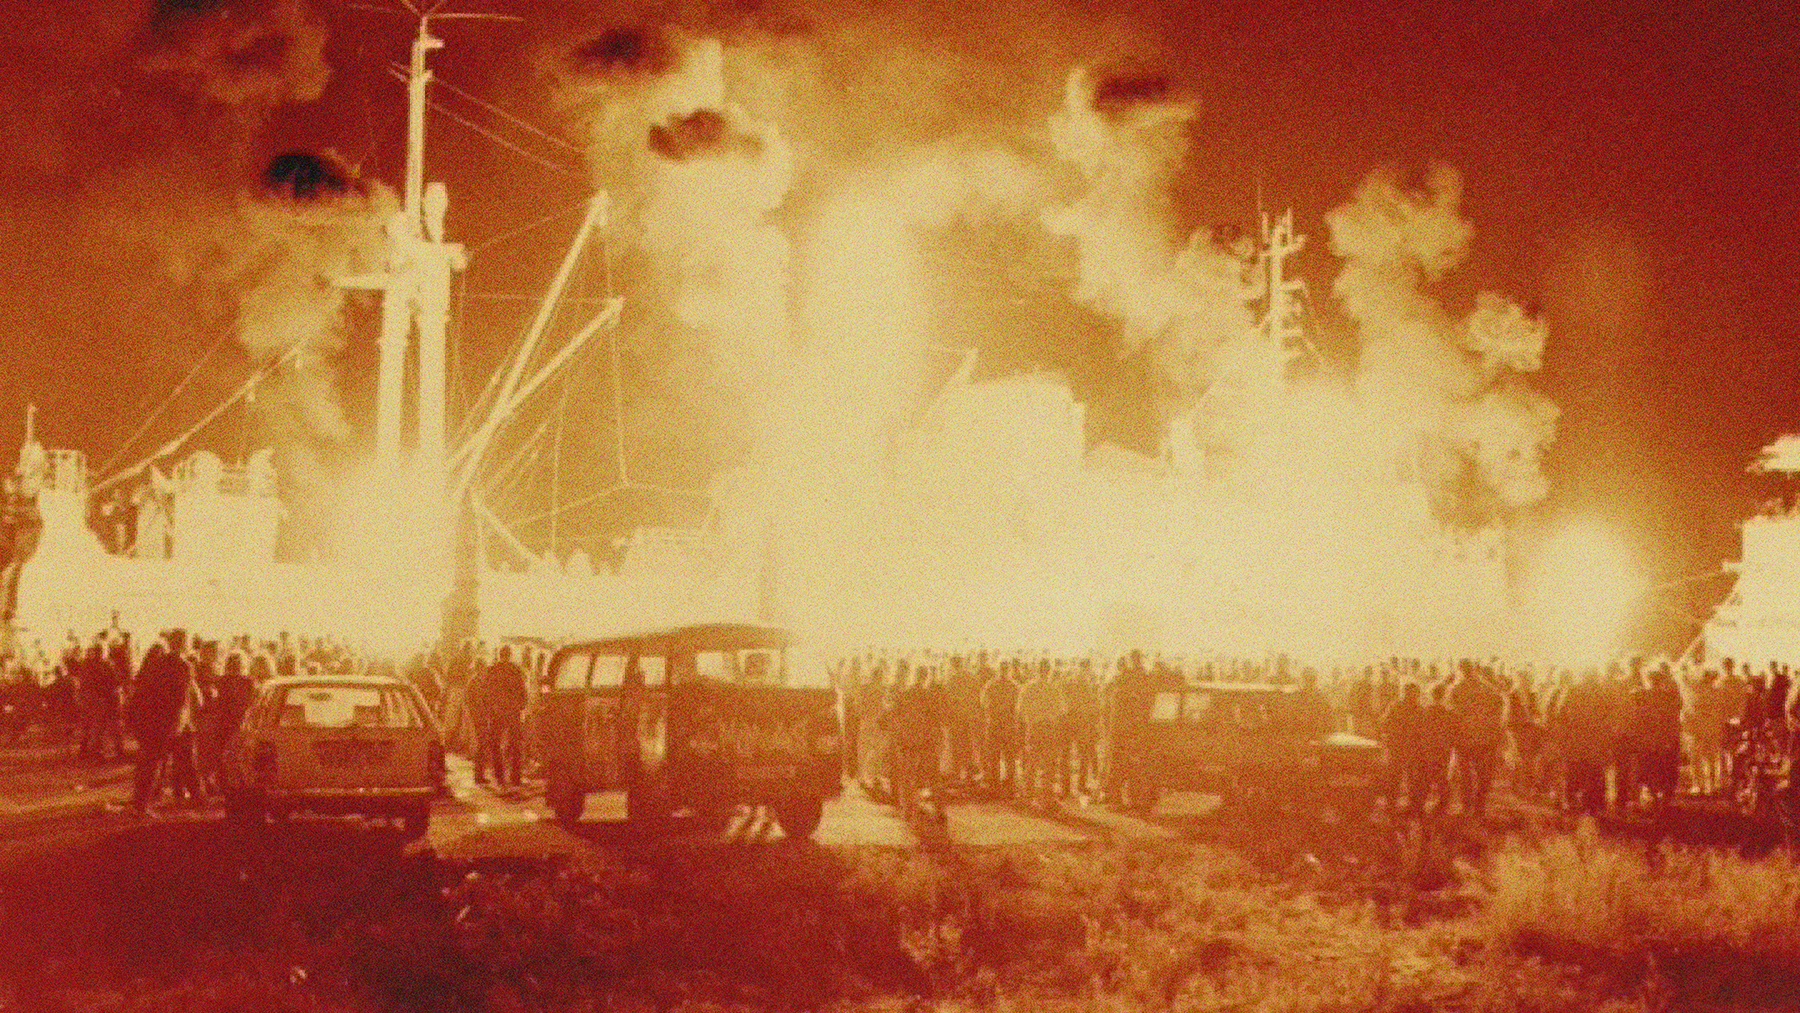 Eine Pyroshow vor der Stubnitz 1993. Die Silhouette des Schiffs ist vom Feuer erleuchtet. Rauchschwaden ziehen in den Himmel. Eine große Menge an Menschen schaut zu. Drei Autos stehen im Vordergrund.